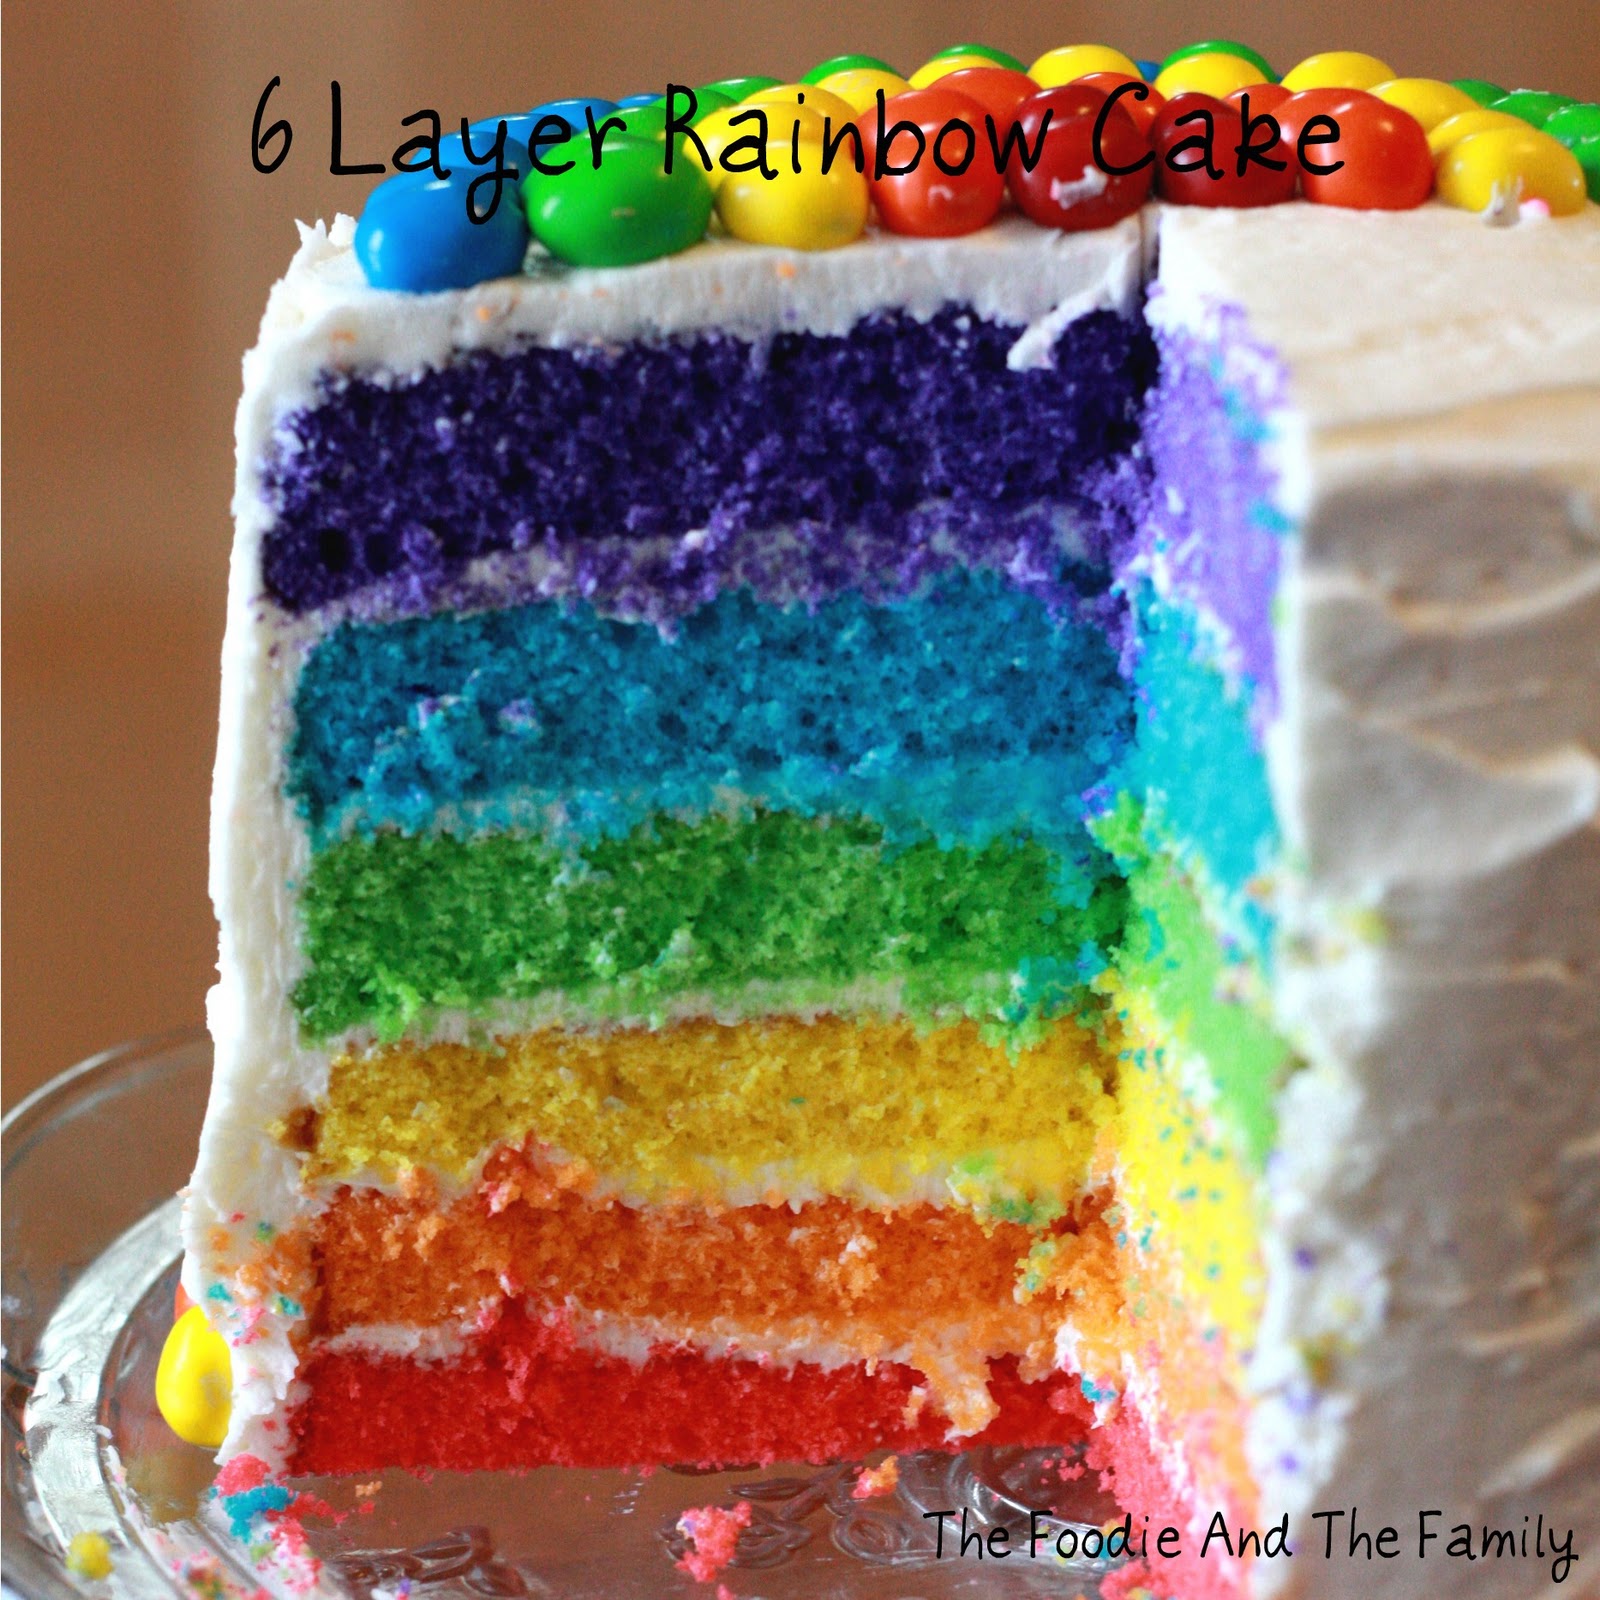 http://1.bp.blogspot.com/-B4Ga4dtSweE/TY5bvotQhNI/AAAAAAAAAb0/bKfS_3Q2sTA/s1600/6_layer_rainbow_cake_inside.jpg